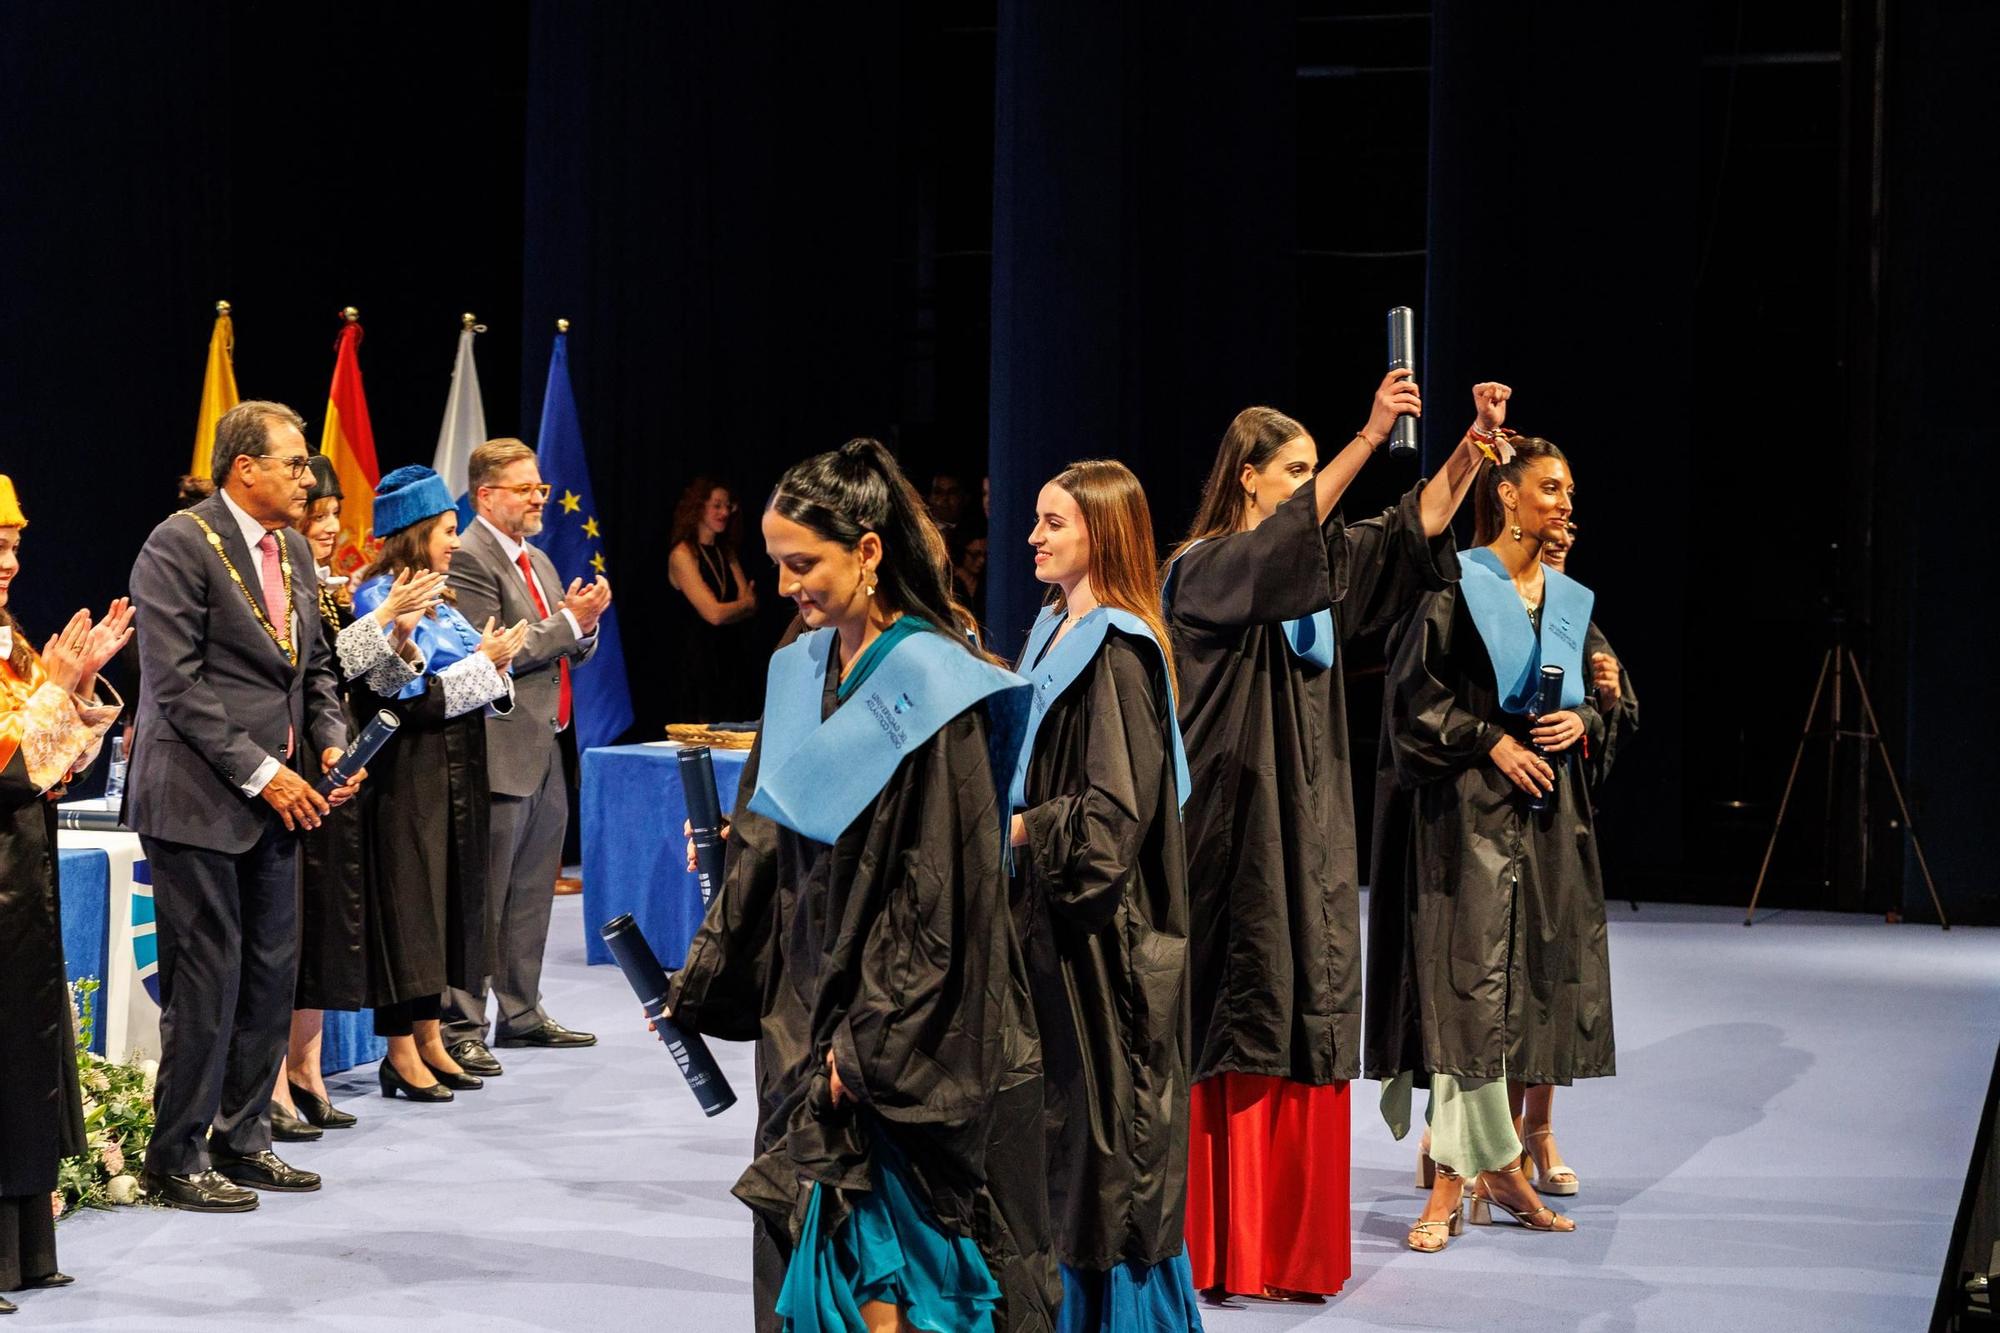 Acto de Graduación de la Universidad del Atlántico Medio - UNAM